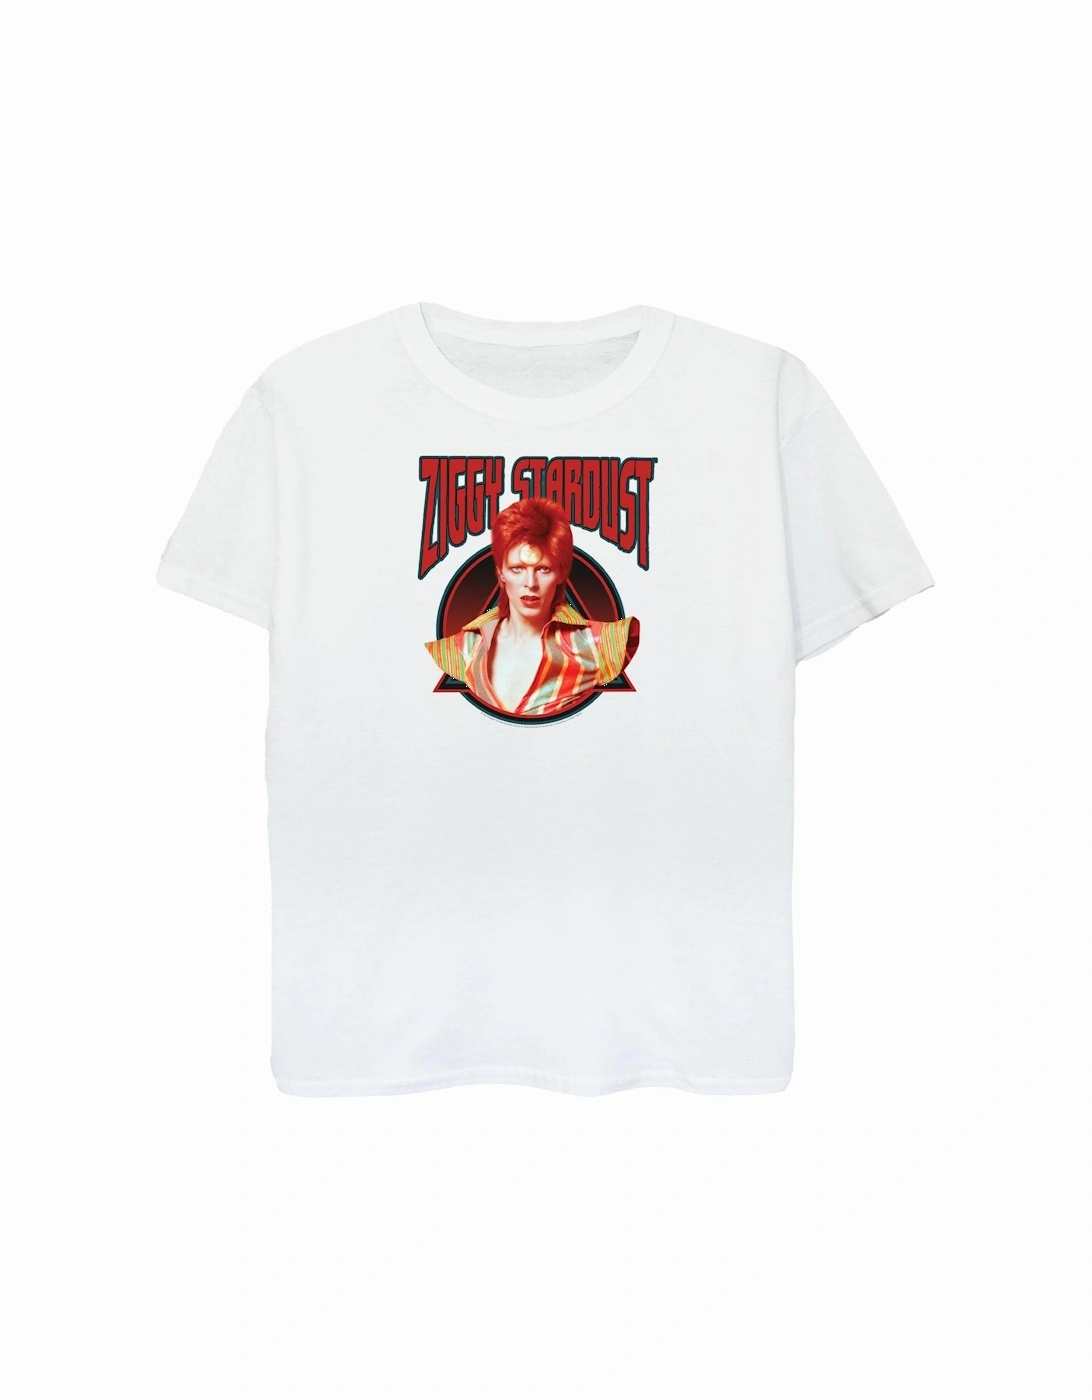 Womens/Ladies Ziggy Stardust Boyfriend Fit Cotton Boyfriend T-Shirt, 4 of 3